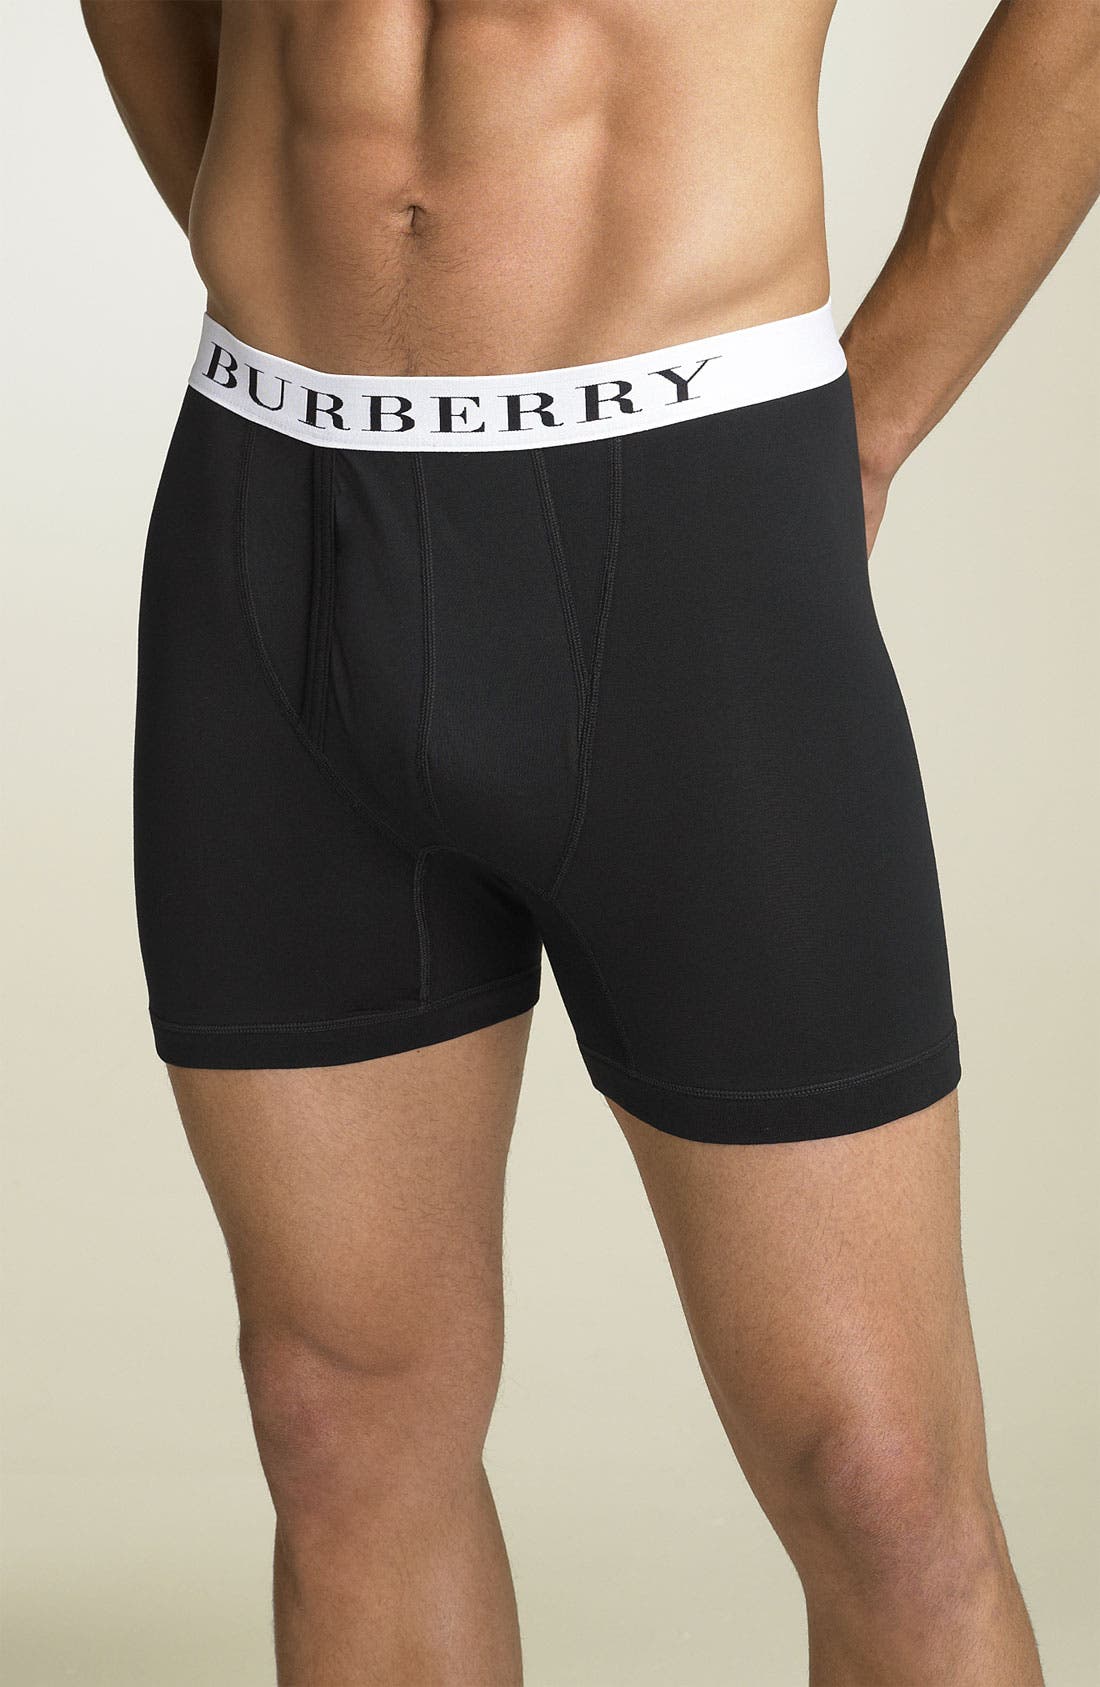 burberry men's underwear nordstrom